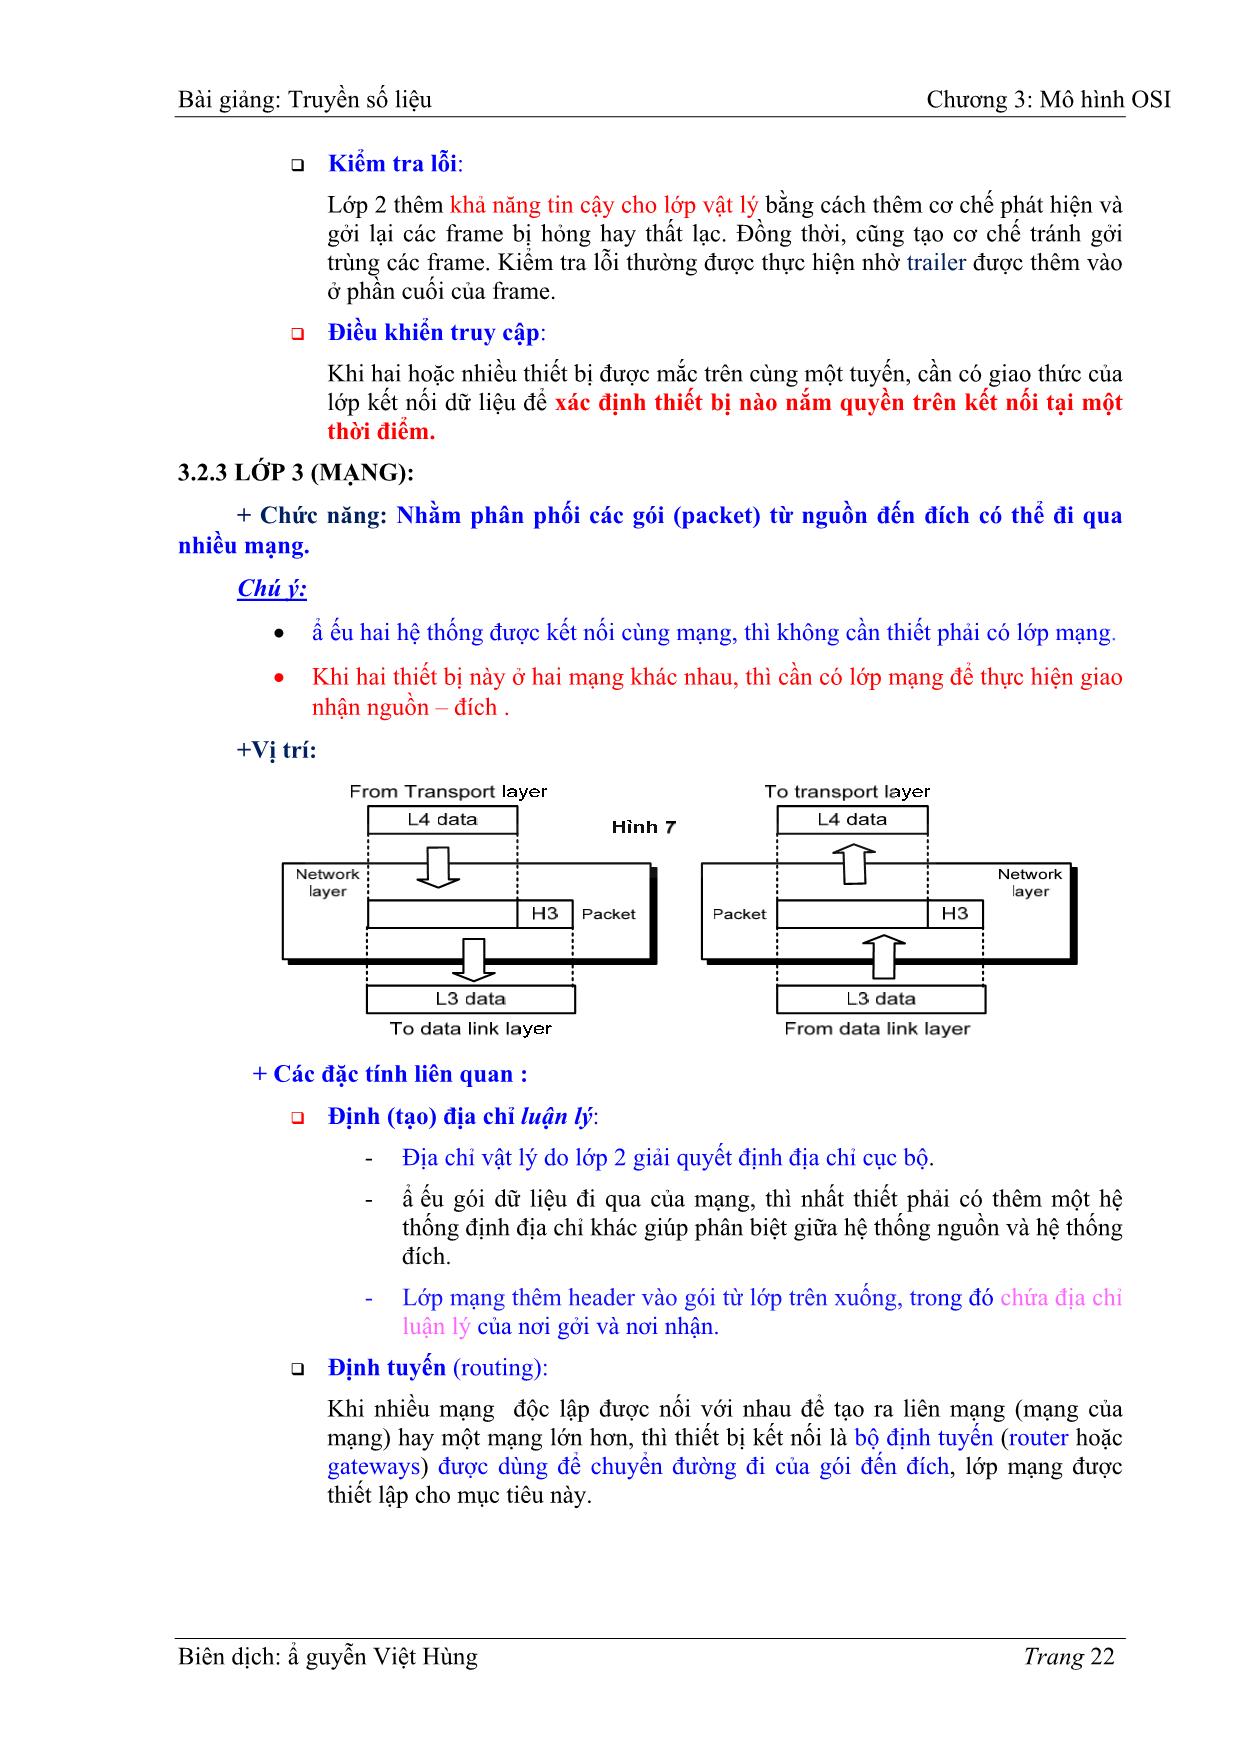 Bài giảng Truyền số liệu - Chương 3: Mô hình OIS - Nguyễn Việt Hùng trang 6